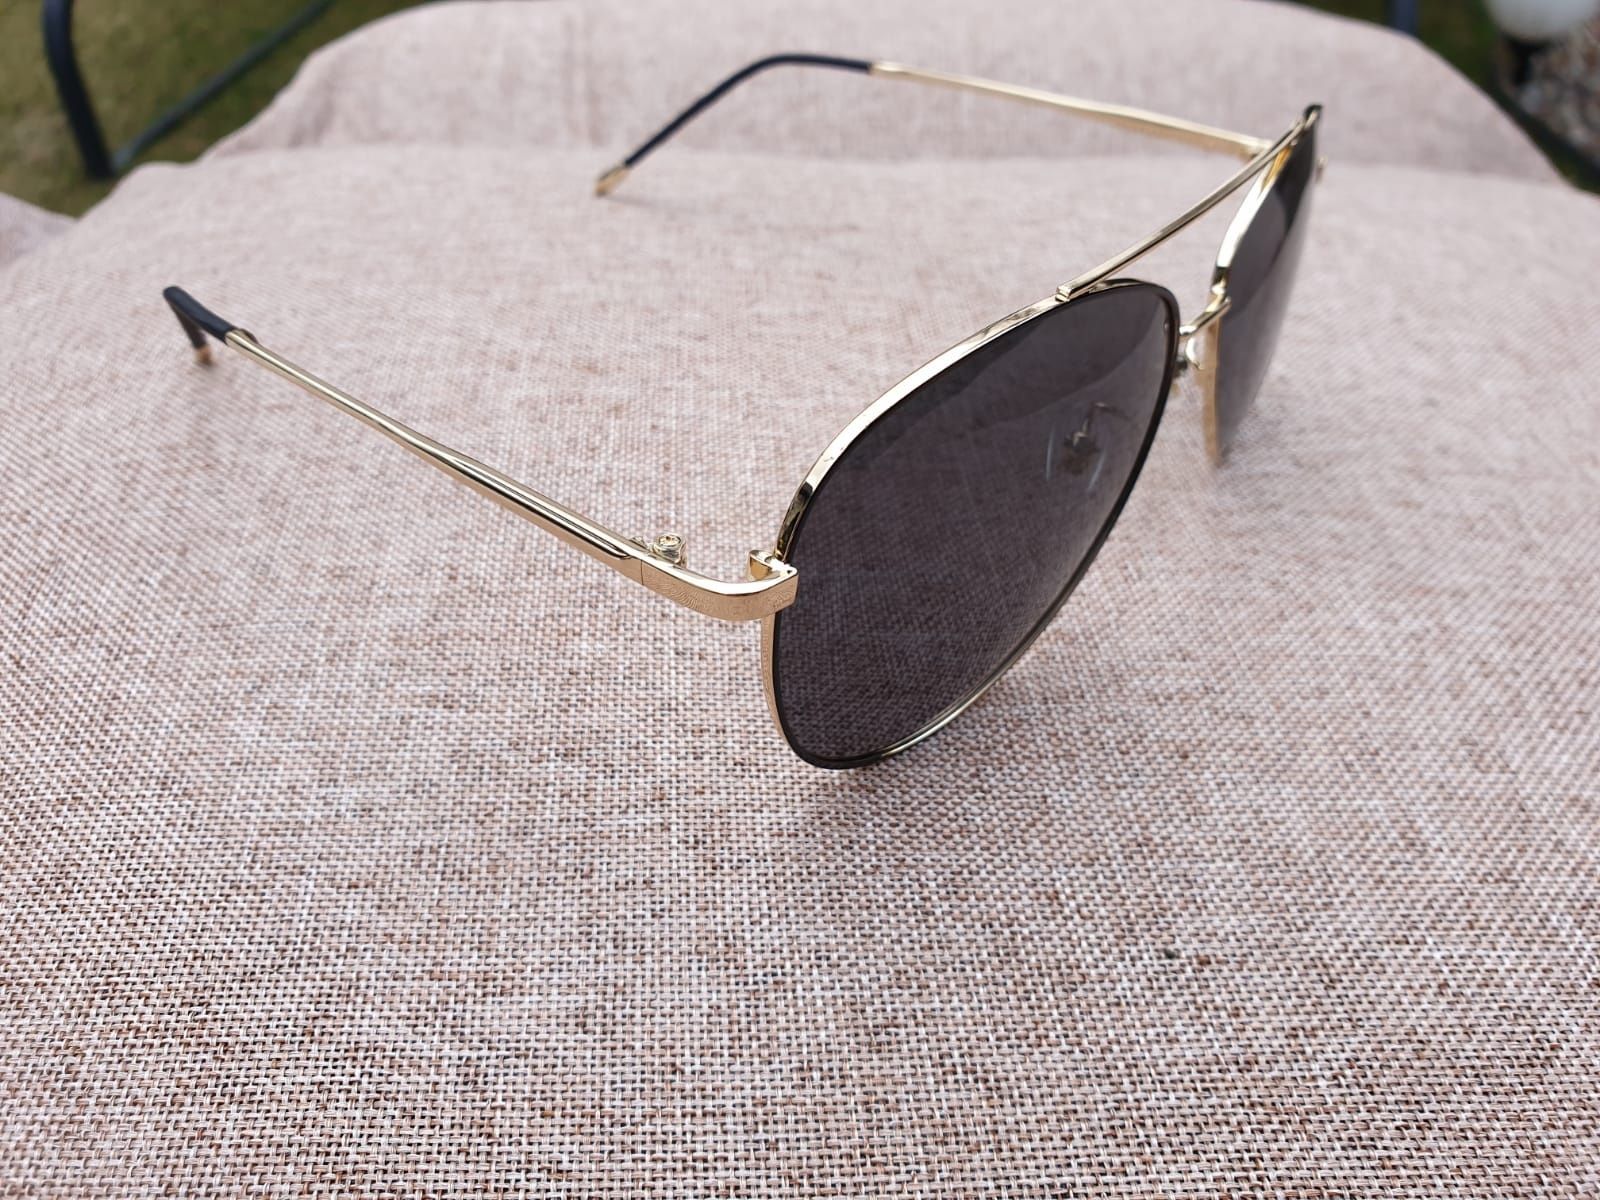 Nowe Okulary Polaryzacyjne UV400 Przeciwsłoneczne Gucci Złote Oprawki